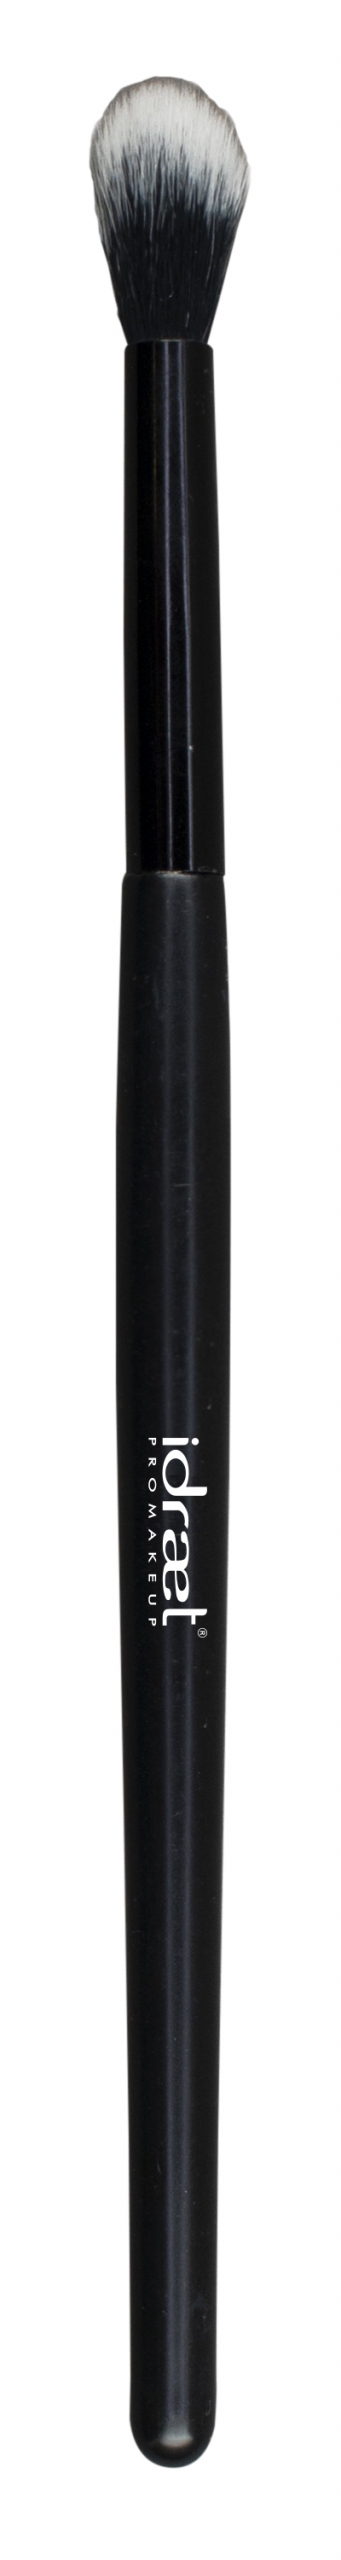 IDRAET - Pincel Blender Largo - S69 Long Blender Brush